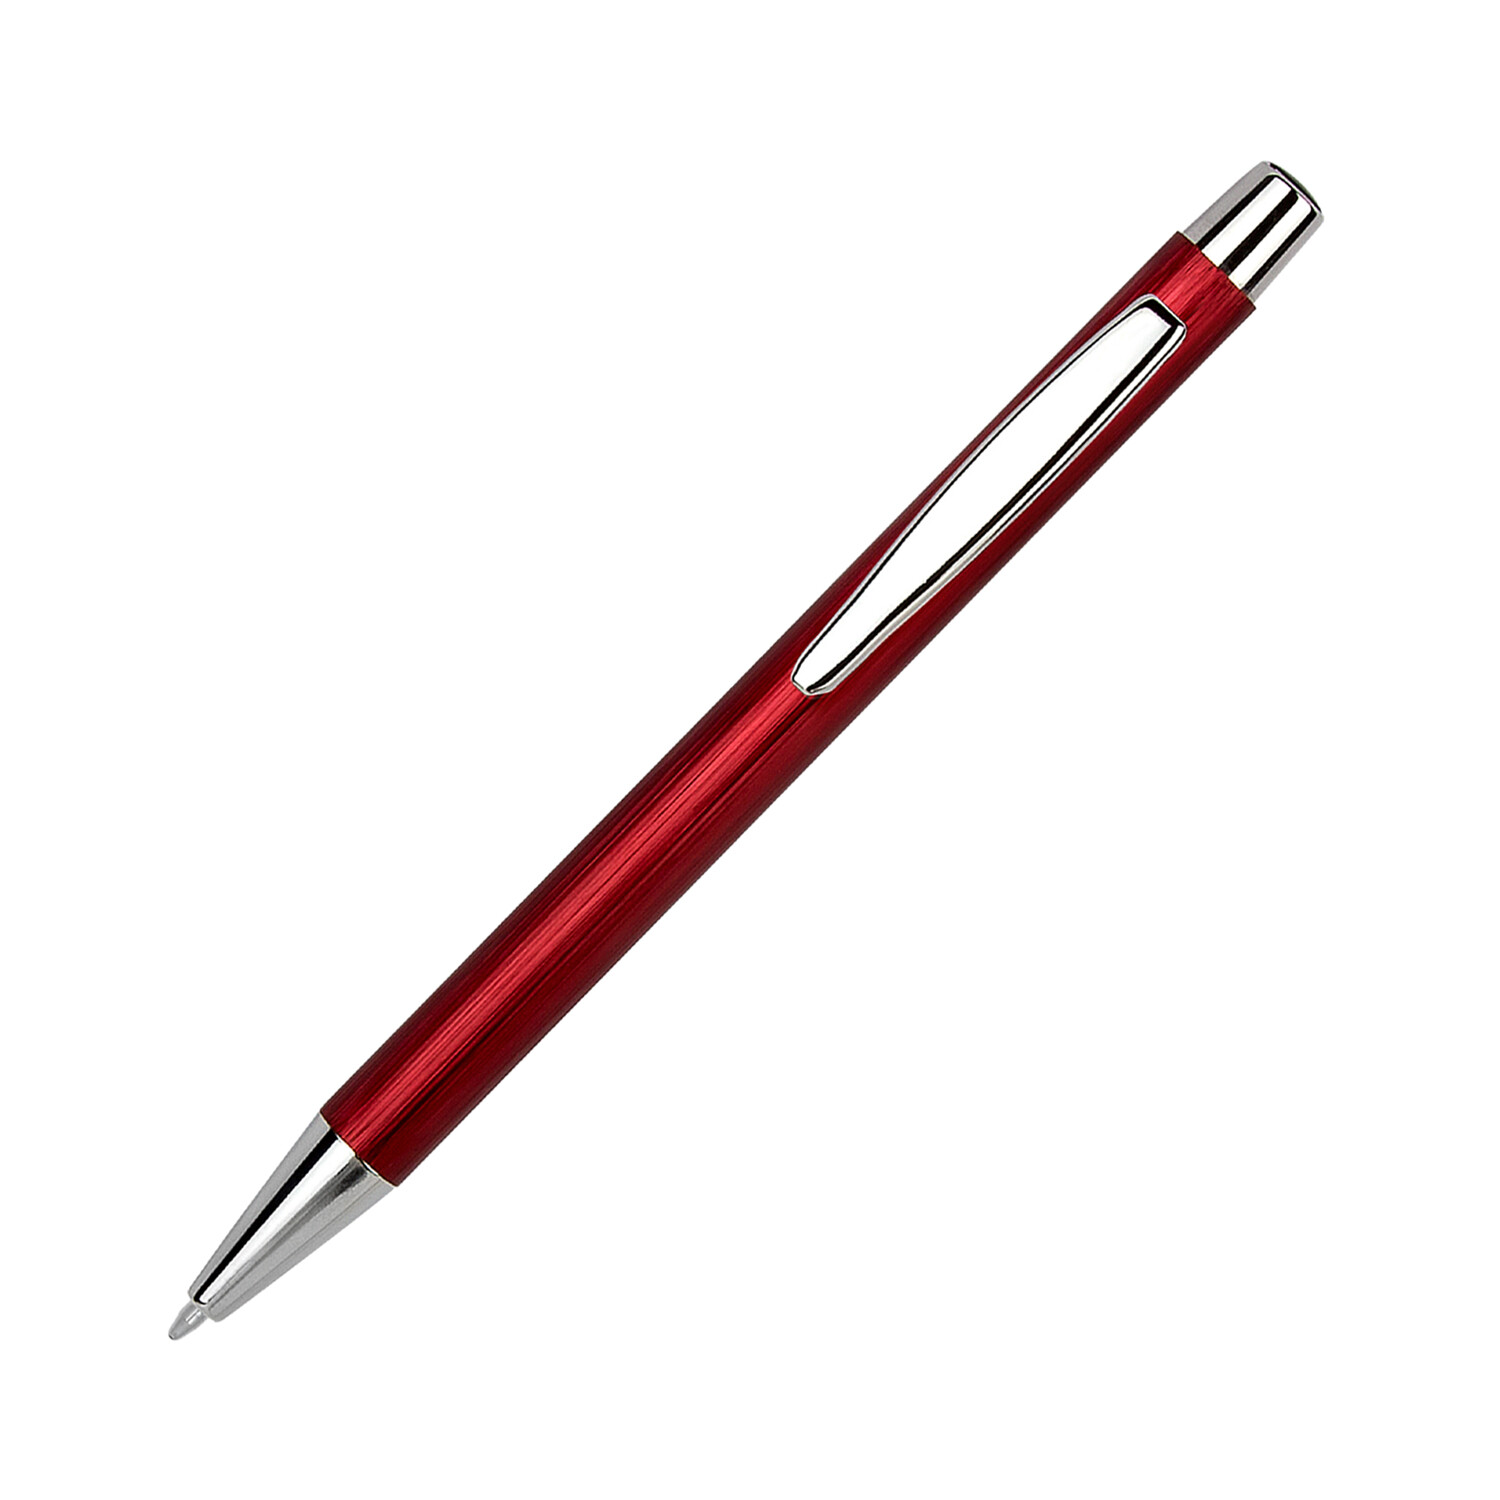 Подарочный набор Portobello/Chameleon NEO красный (Ежедневник недат А5, Ручка, Power Bank)